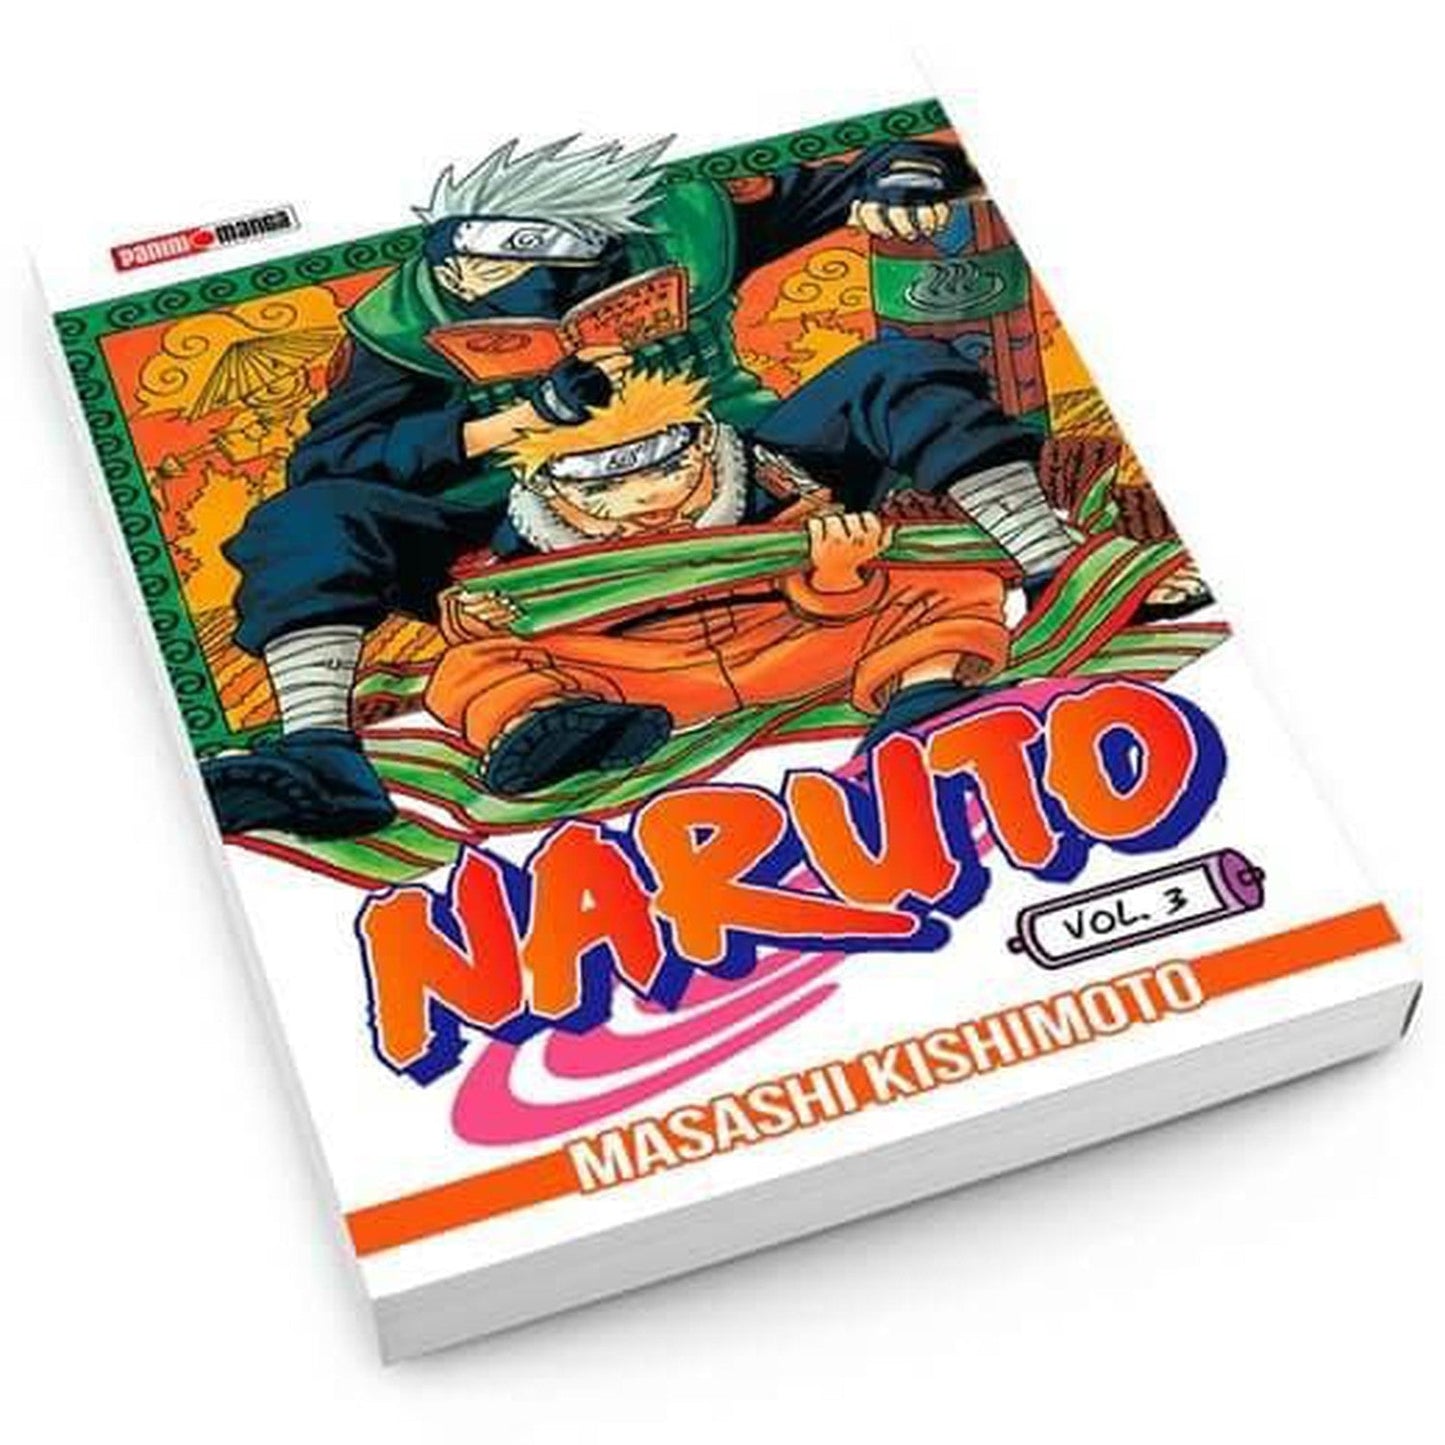 Naruto #3